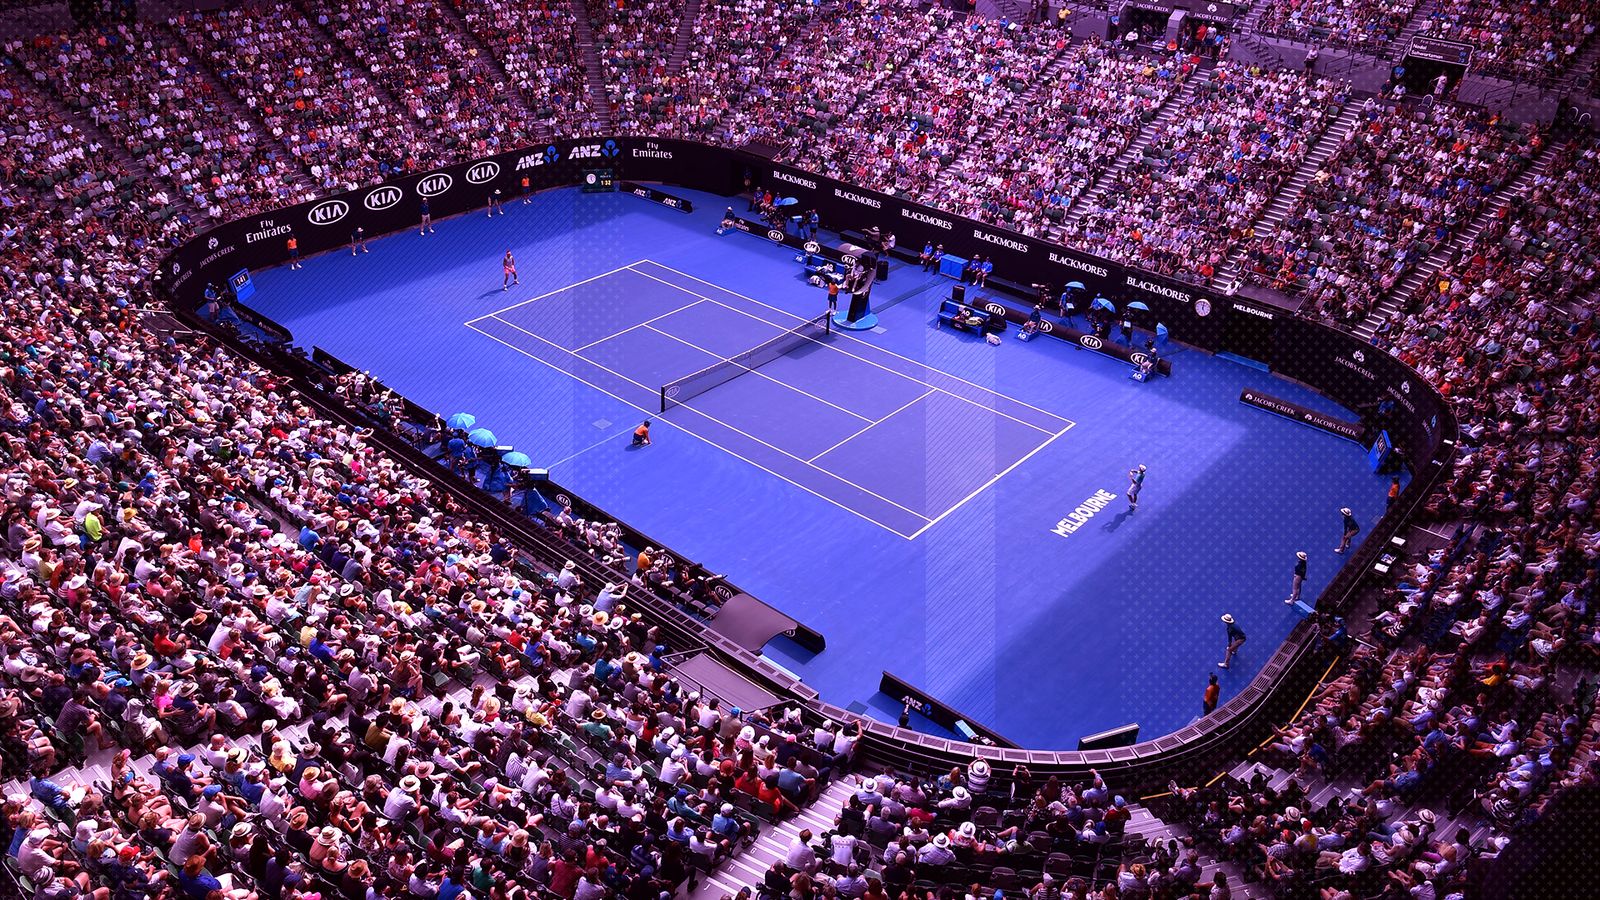 Австралия опен сетки. Большой теннис Австралия опен. Австралиан опен покрытие. Гамбург евро опен теннис. Австралия теннис большой шлем трибуна.